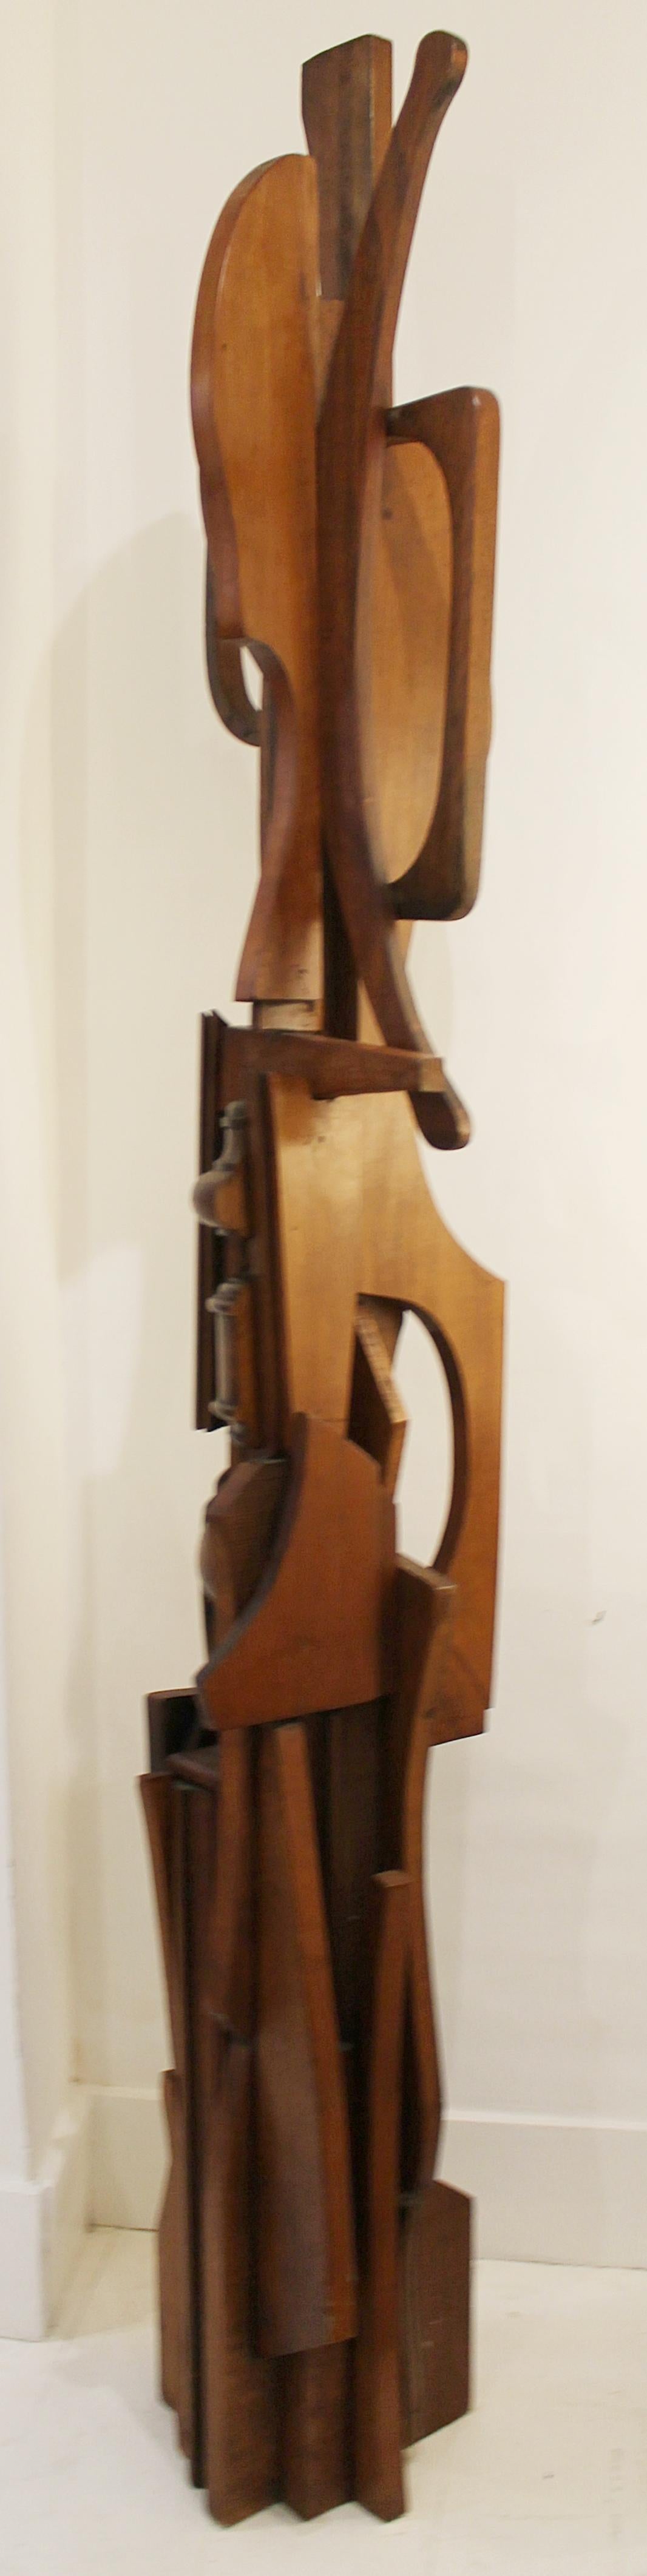 Wood TOTEM sculpture by Ricardo Santamaria, Spain, 1975.